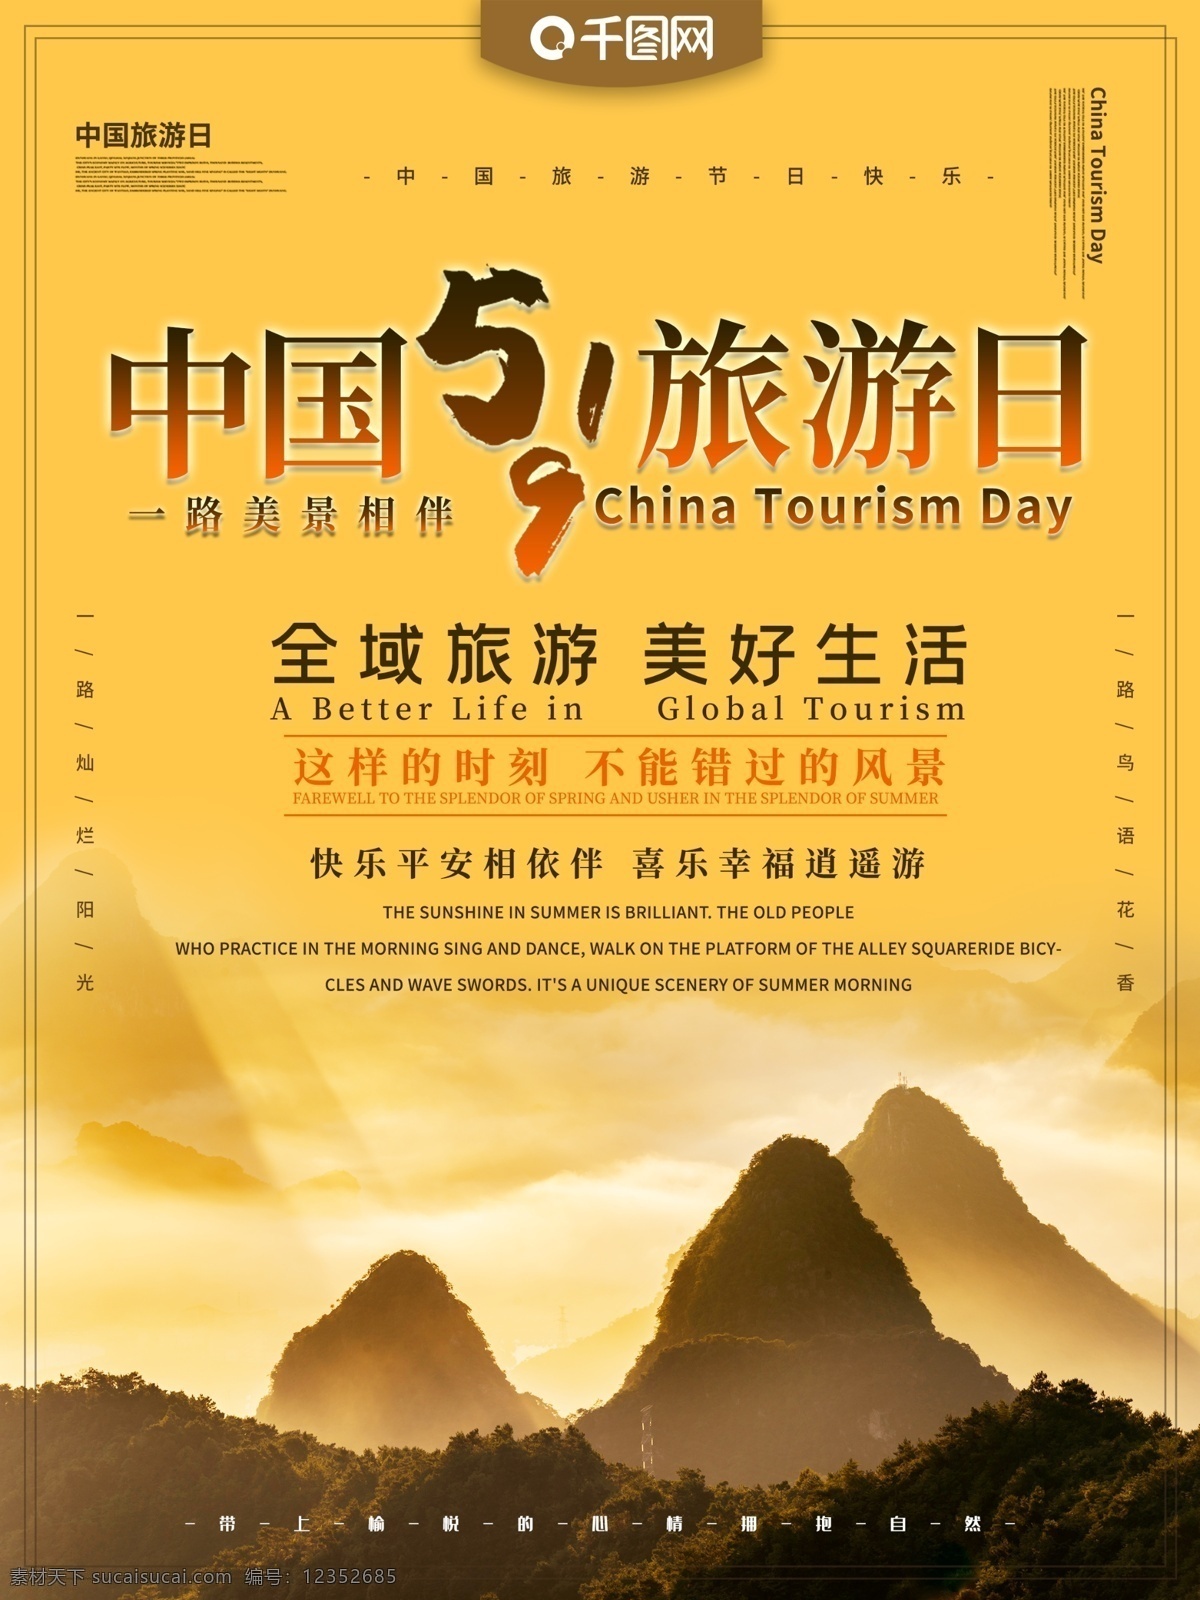 中国旅游 日 主题 海报 中国旅游日 旅游 旅行 全域旅游 5月19 风景 美景